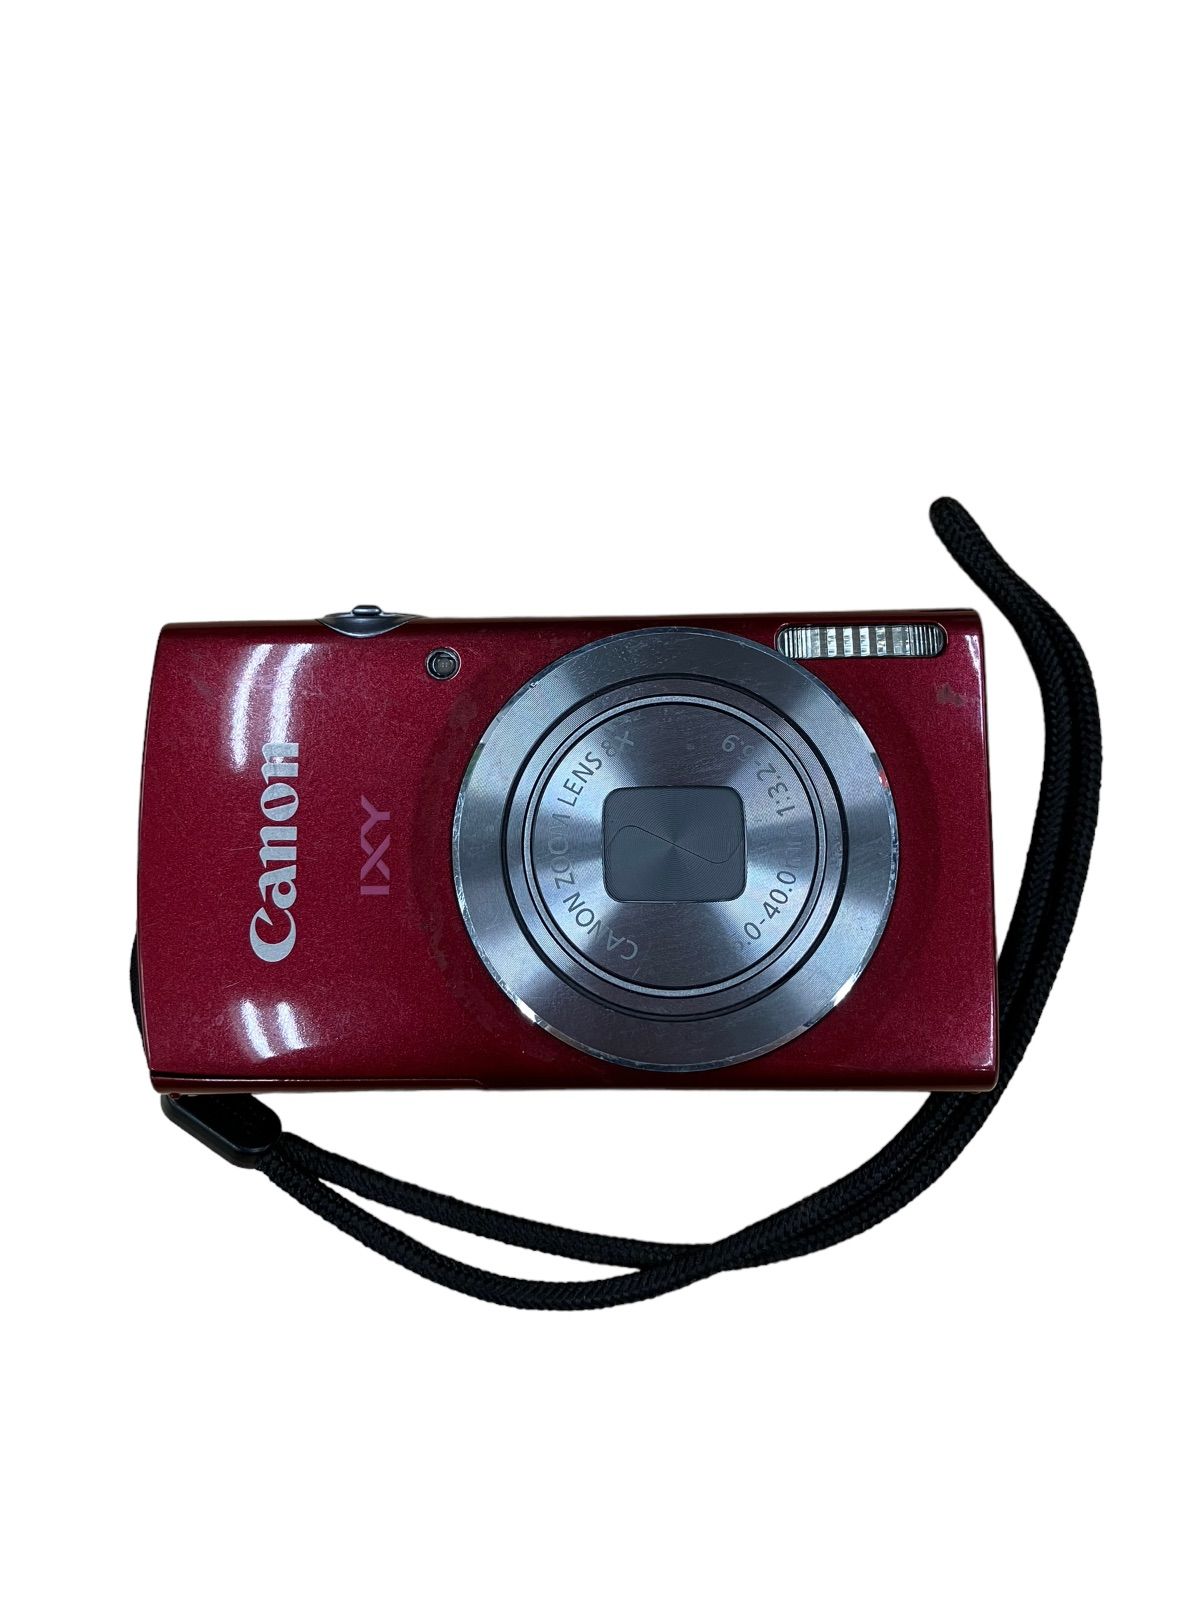 ほぼ新品】Canon IXY 120 BK【コンデジ】 - デジタルカメラ